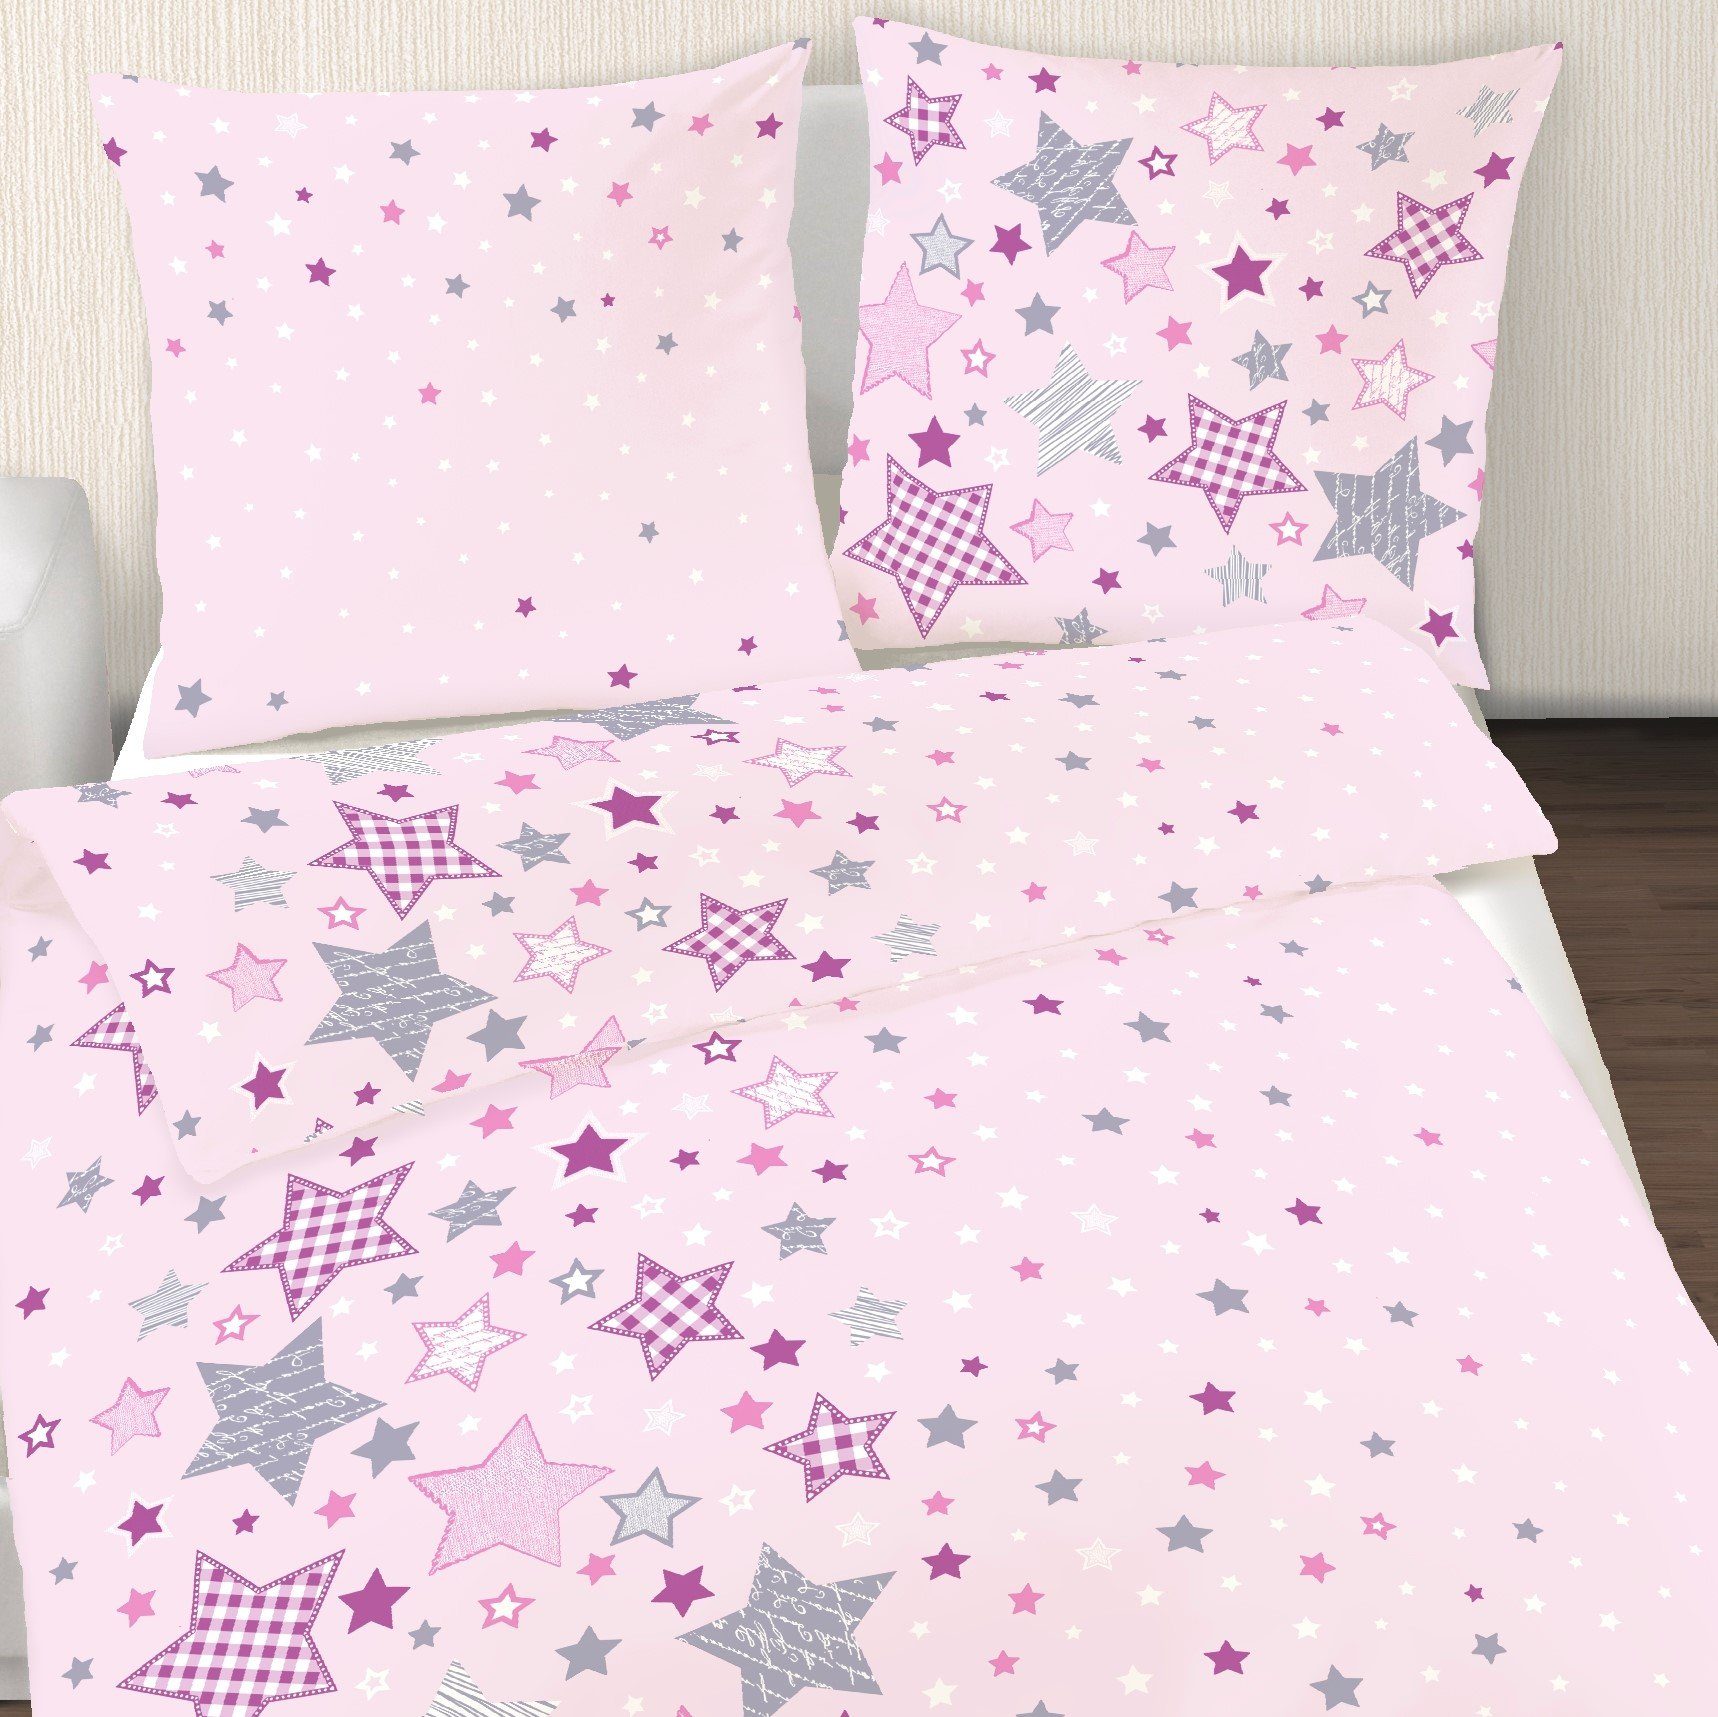 Bettwäsche Sterne 135x200 + 80x80 cm 2 tlg., 100 % Baumwolle in Fein-Biber,  MTOnlinehandel, Biber, 2 teilig, Kinderbettwäsche mit vielen Sternen &  Sternchen in rosa, lila & grau